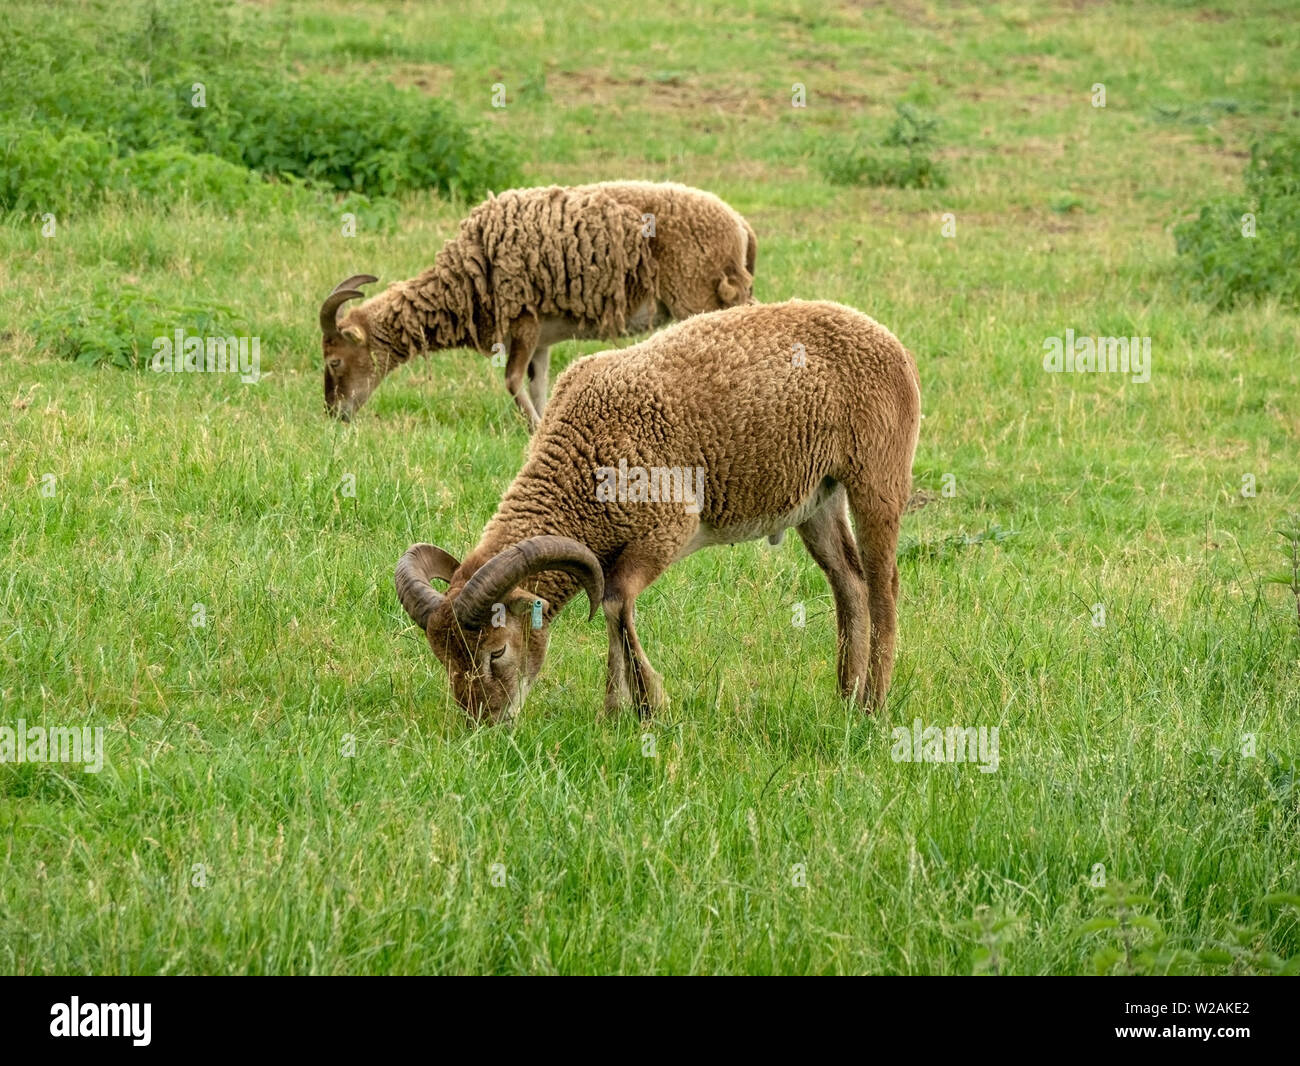 Zwei Soay-schafe als Schafe, eine seltene Rasse der Schafe (Ovis aries) mit Hörnern und Braun woolly Vliese Beweidung in Gras Feld in Cambridgeshire, Großbritannien Stockfoto